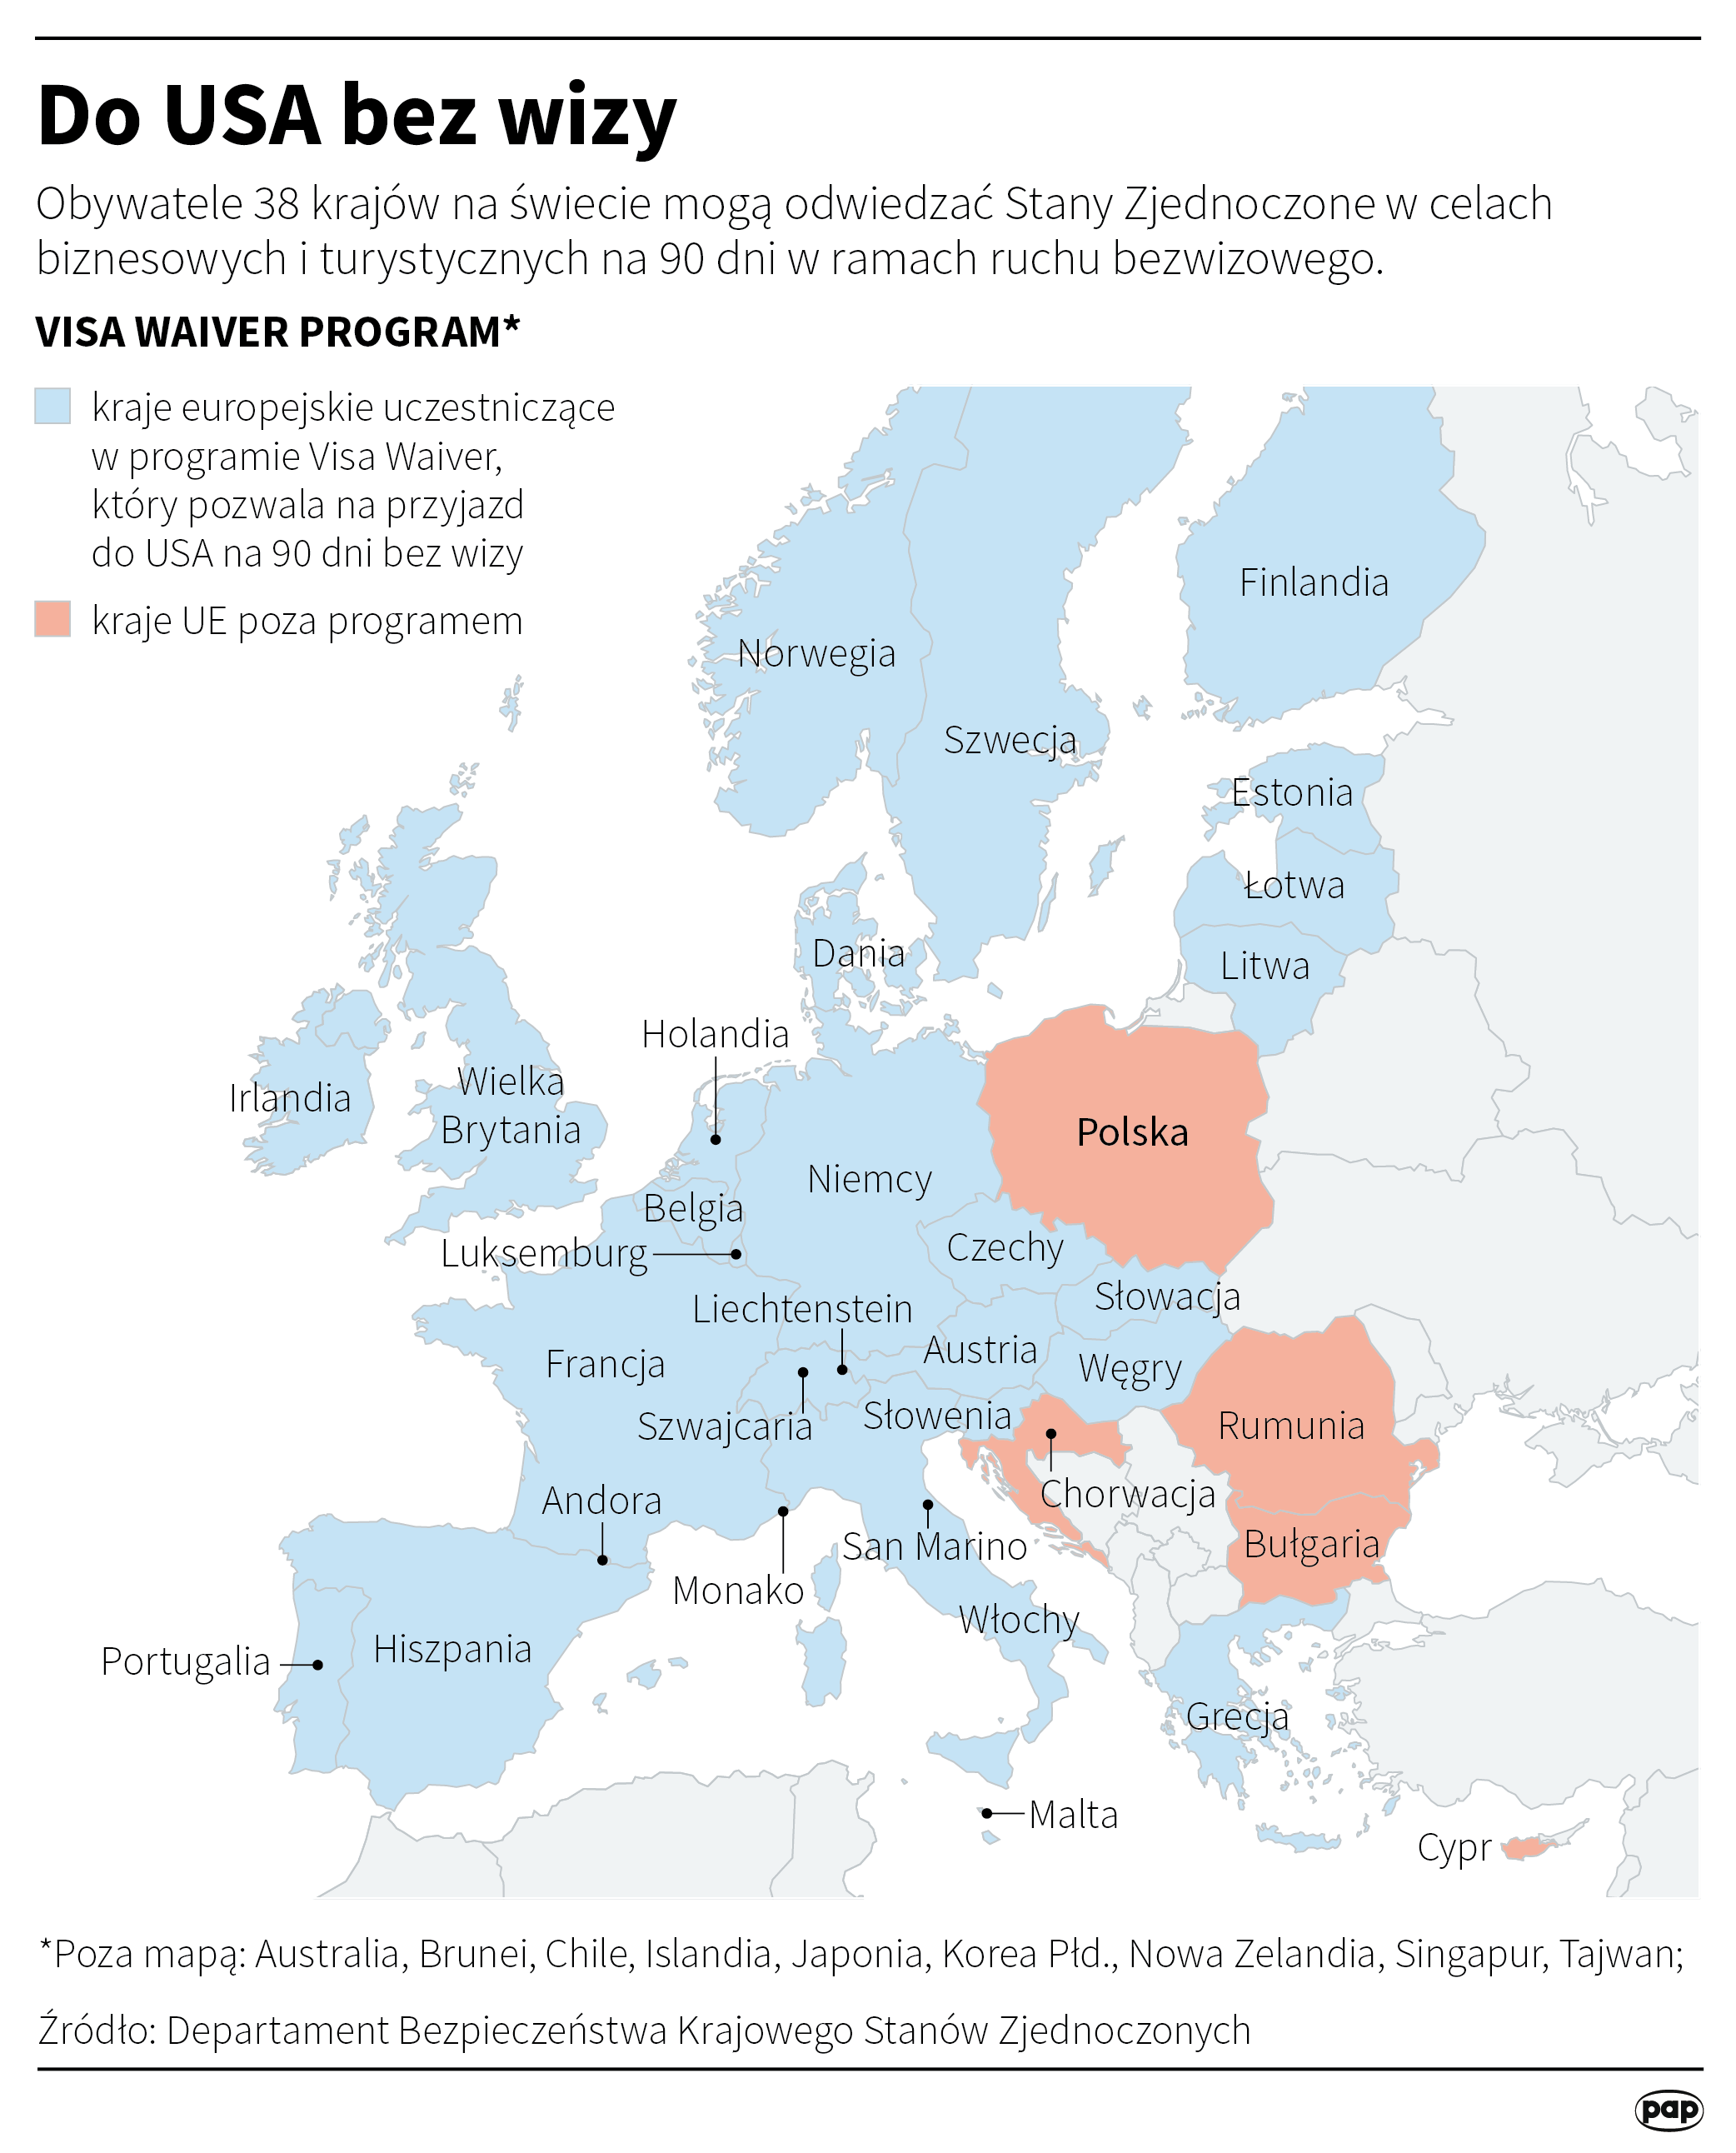 Amerykanie zniosą wizy do USA dla Polaków. Polska spełniła kryteria Visa  Waiver Program